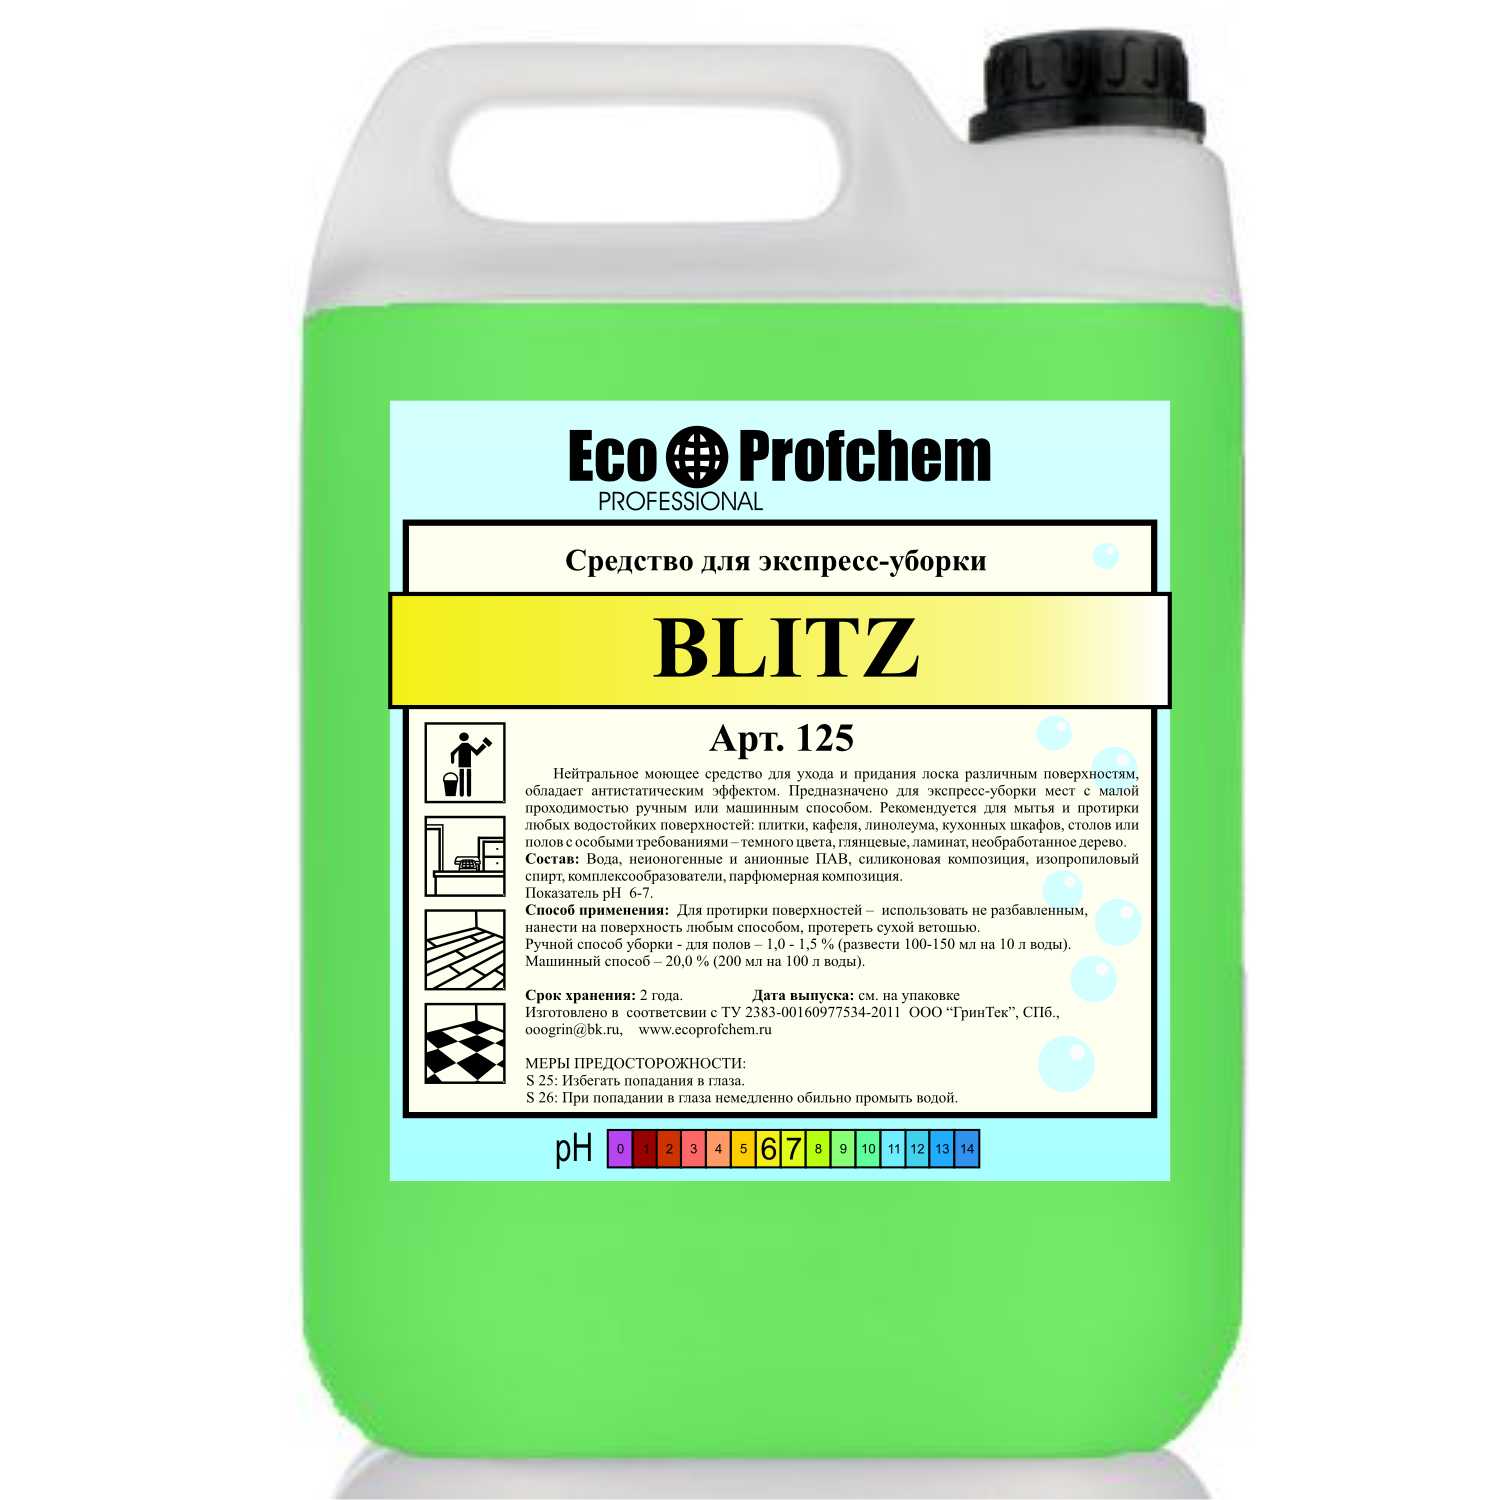 BLITZ - (EcoProfChem) средство для экспресс-уборки дома и офиса цена